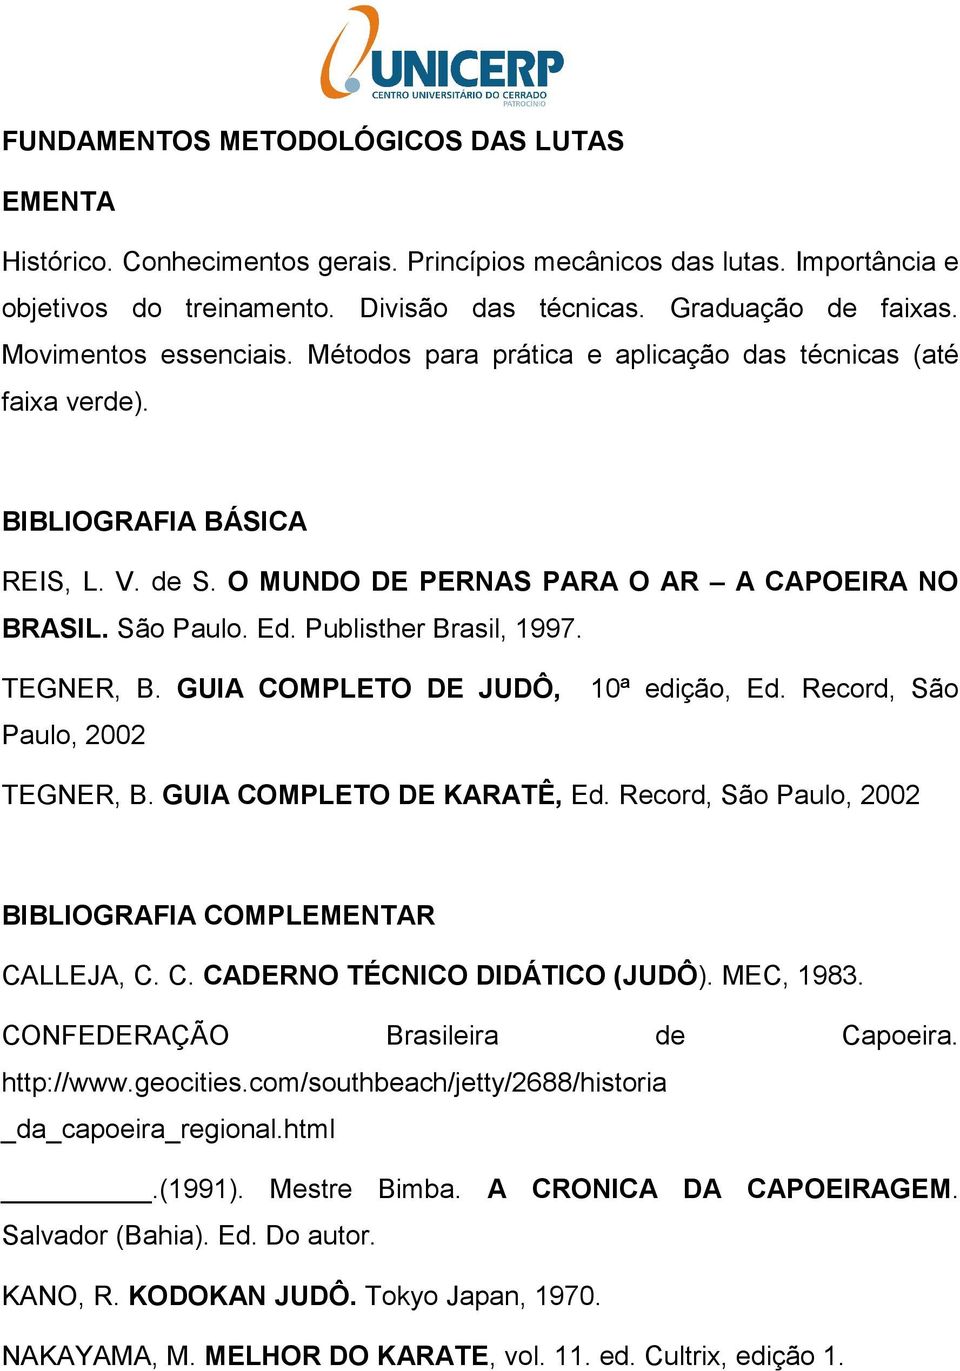 TEGNER, B. GUIA COMPLETO DE JUDÔ, 10ª edição, Ed. Record, São Paulo, 2002 TEGNER, B. GUIA COMPLETO DE KARATÊ, Ed. Record, São Paulo, 2002 CALLEJA, C. C. CADERNO TÉCNICO DIDÁTICO (JUDÔ). MEC, 1983.